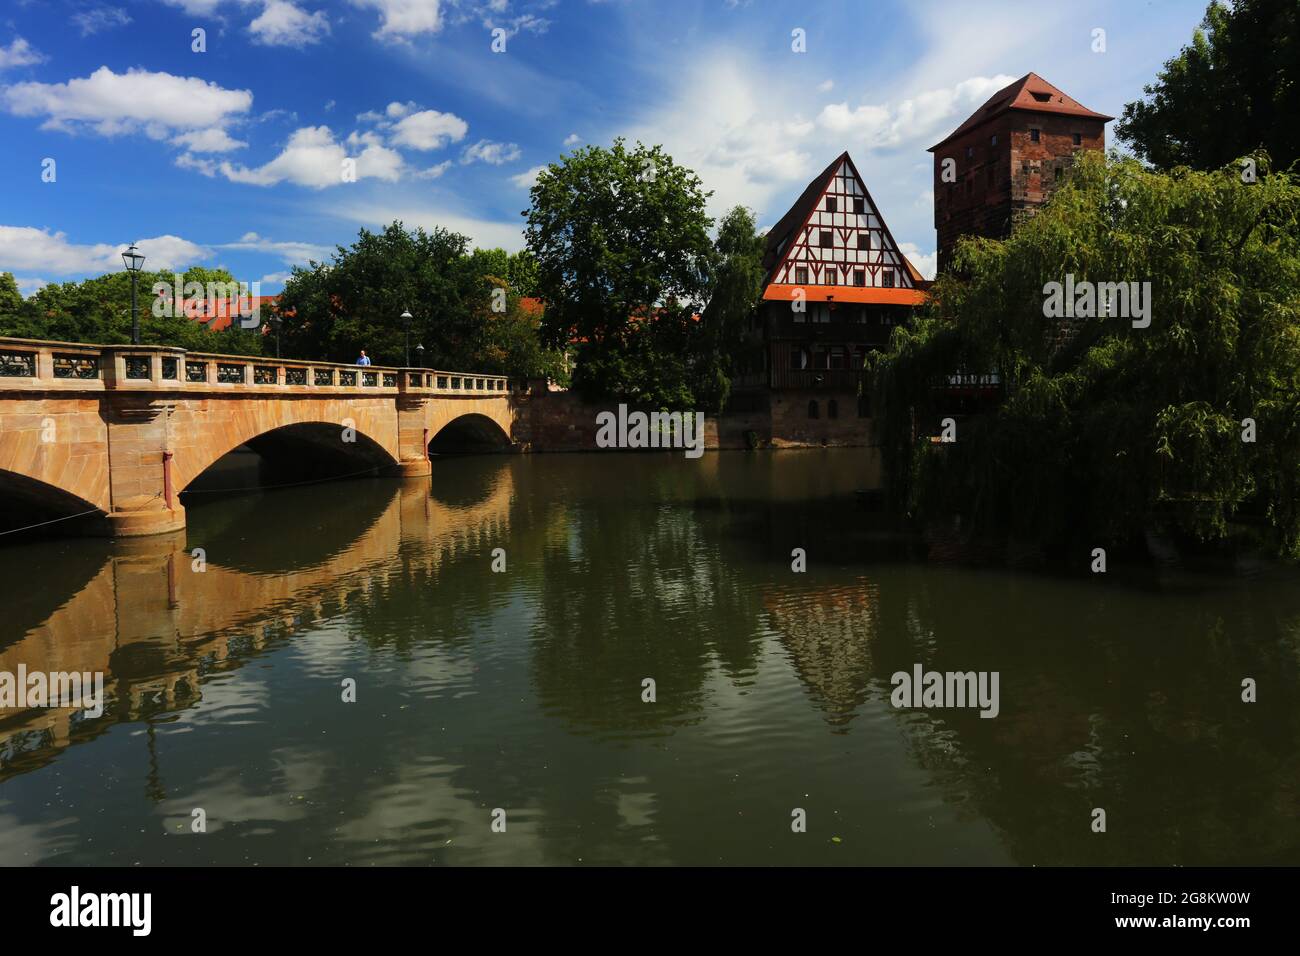 Nürnberg Altstadt oder Innenstadt - Ufer des Fluss Pegnitz, mit Brücke und mittelalterlichen Fachwerkhaus Deutschland Stockfoto